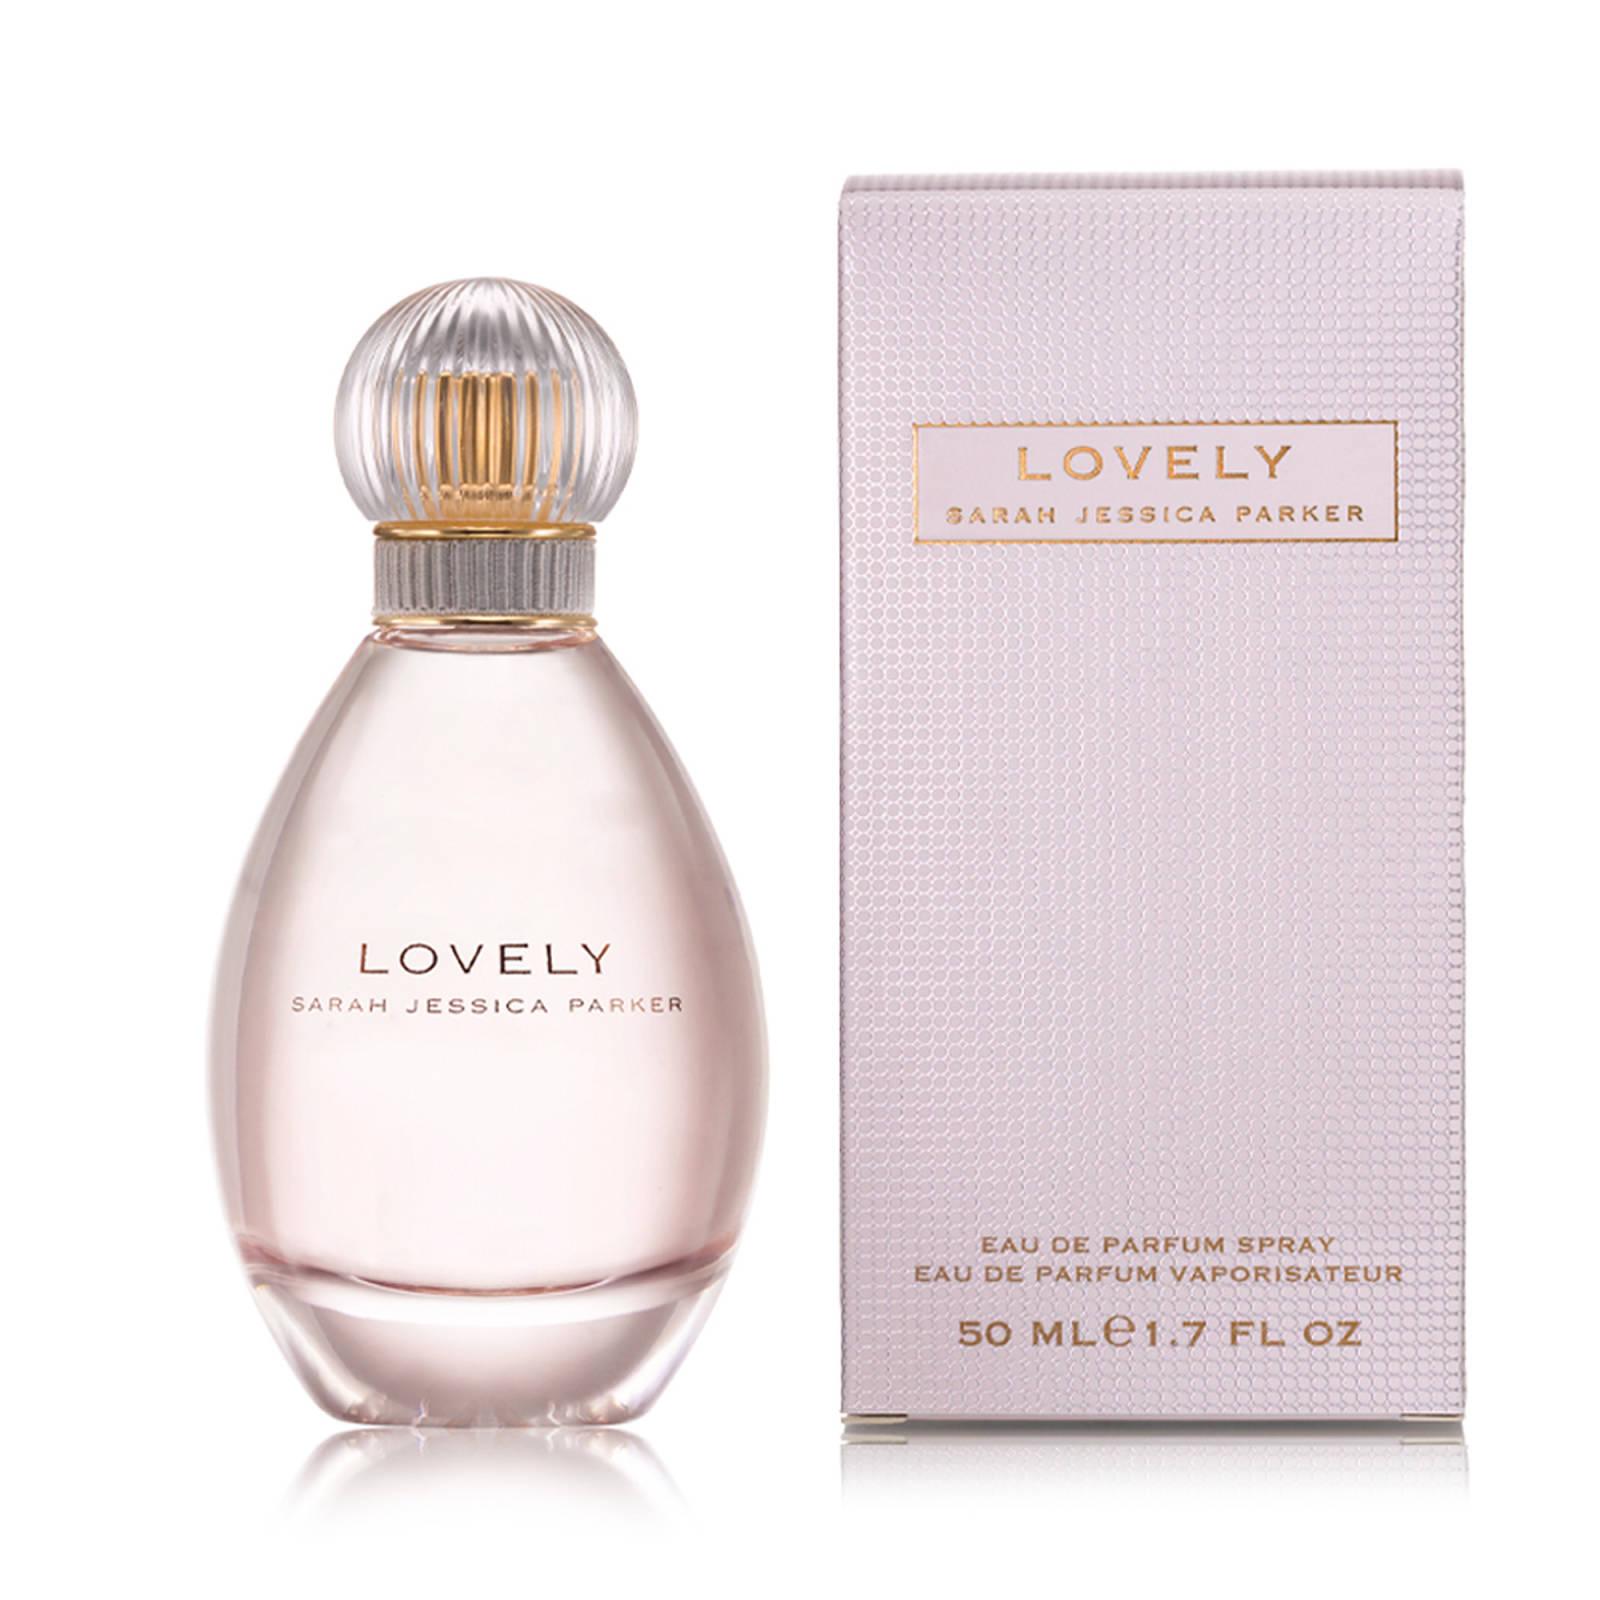 Sarah Jessica Parker Lovely Eau de Parfum Spray 50ml | SEPHORA UK